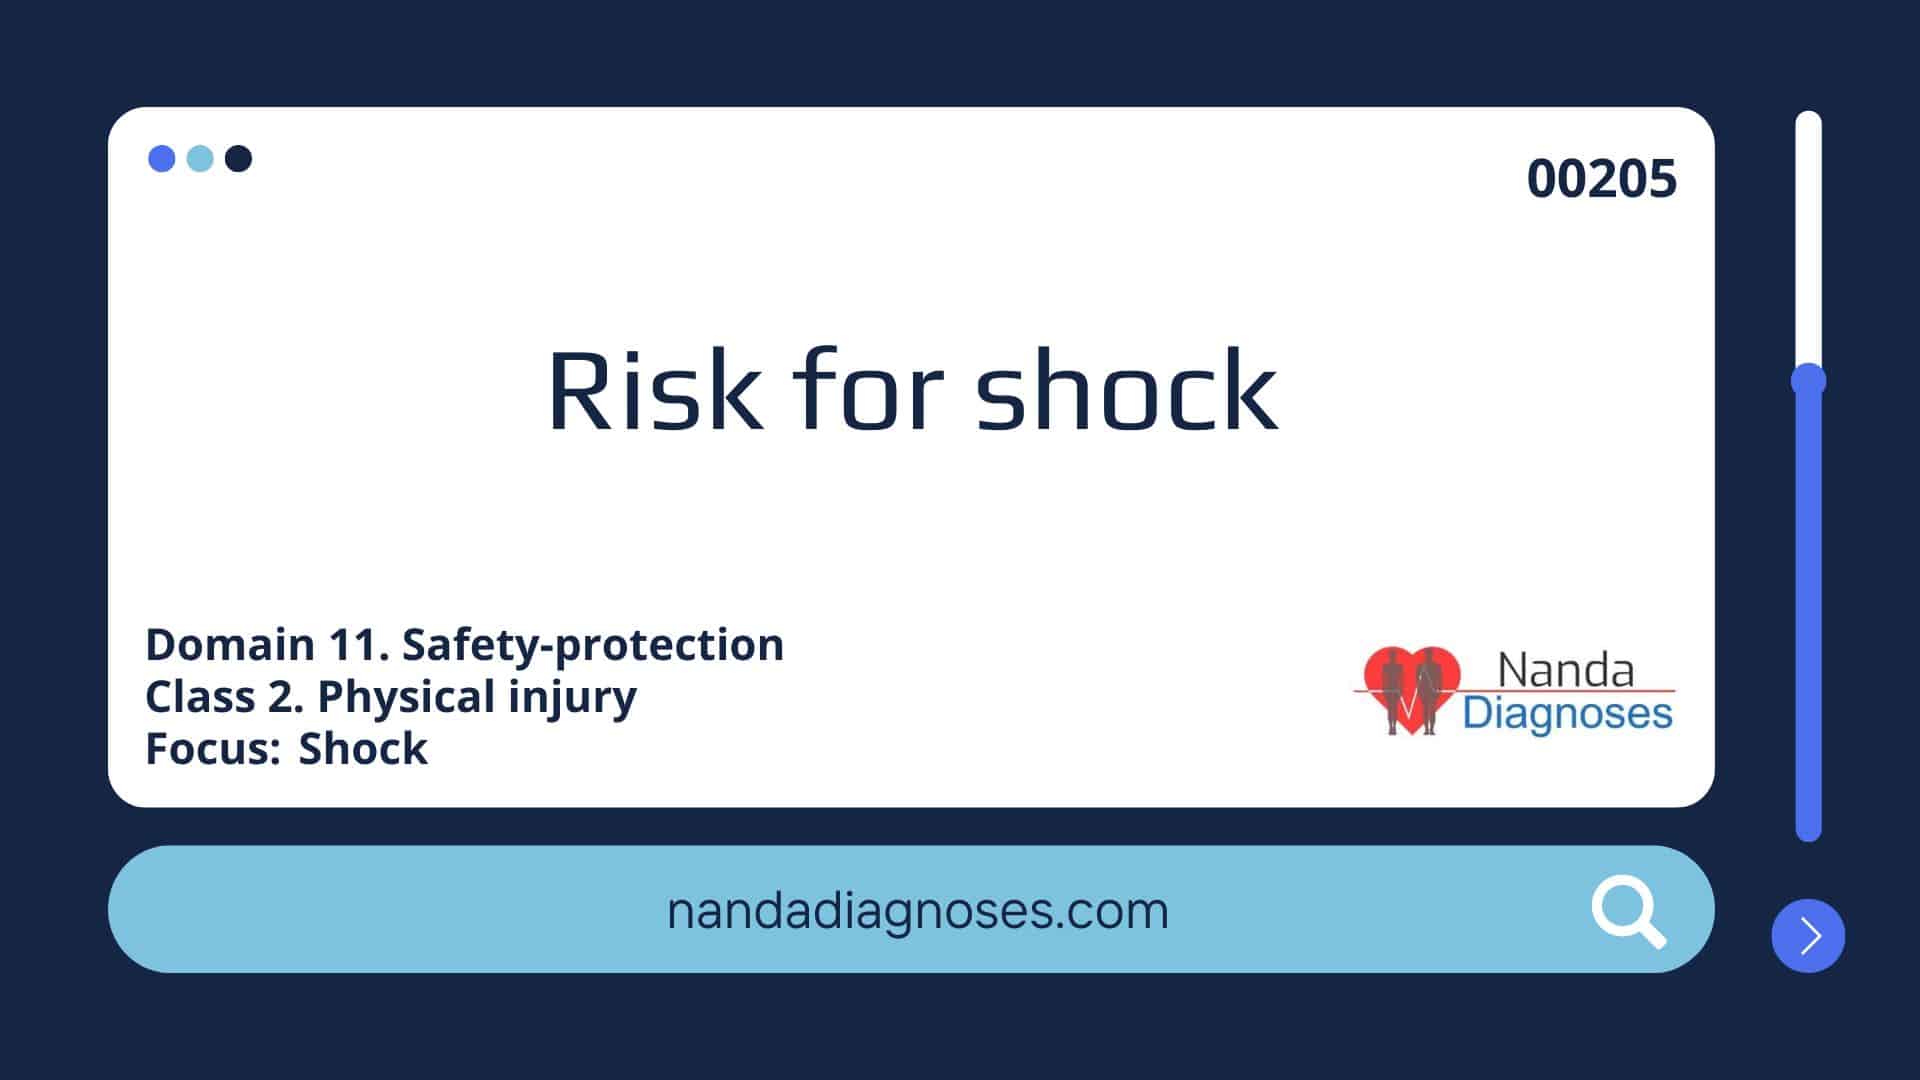 Nursing diagnosis Risk for shock